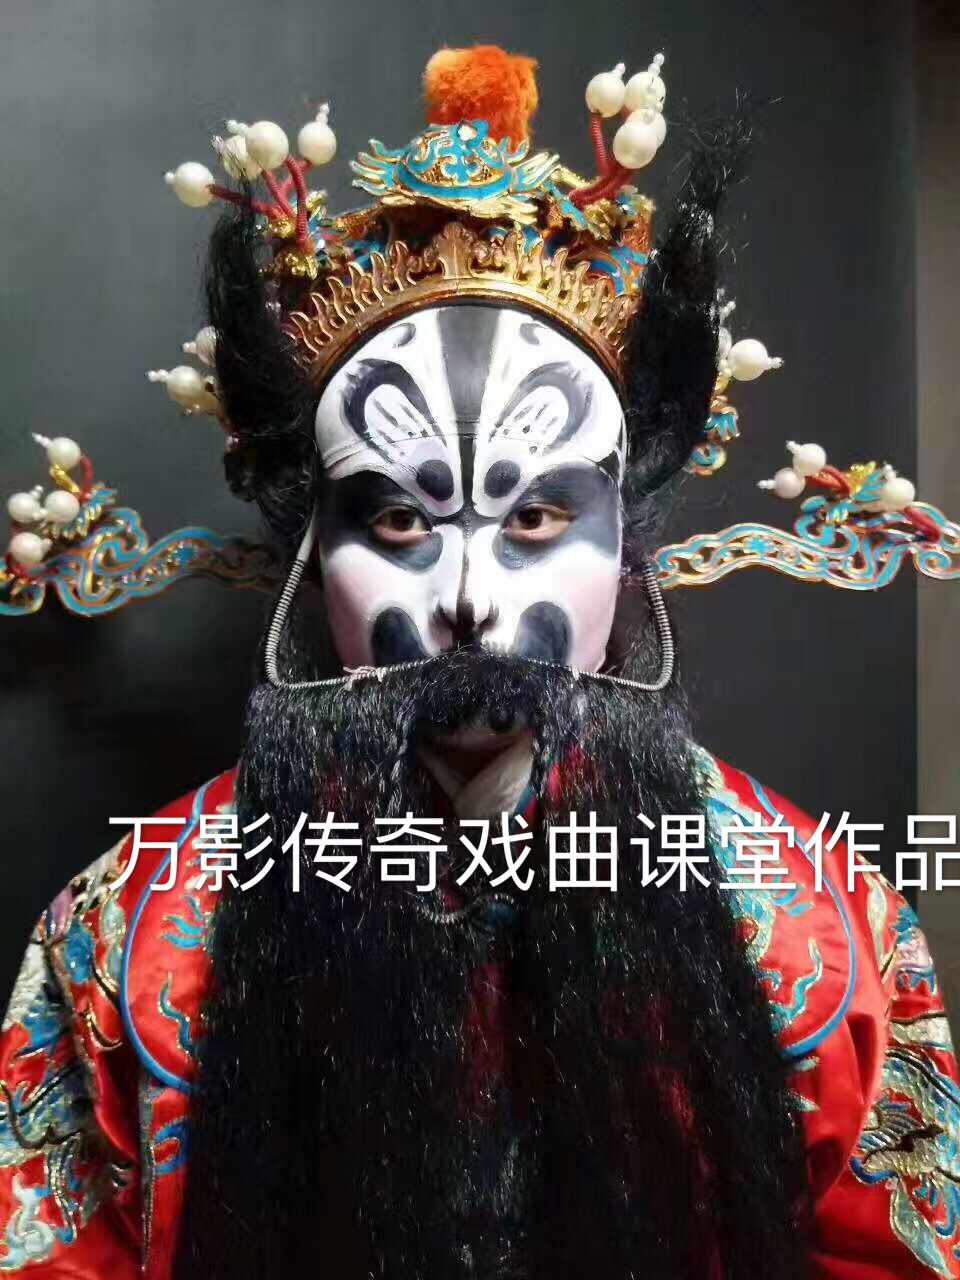 一起去看看京剧舞台上的脸谱人物